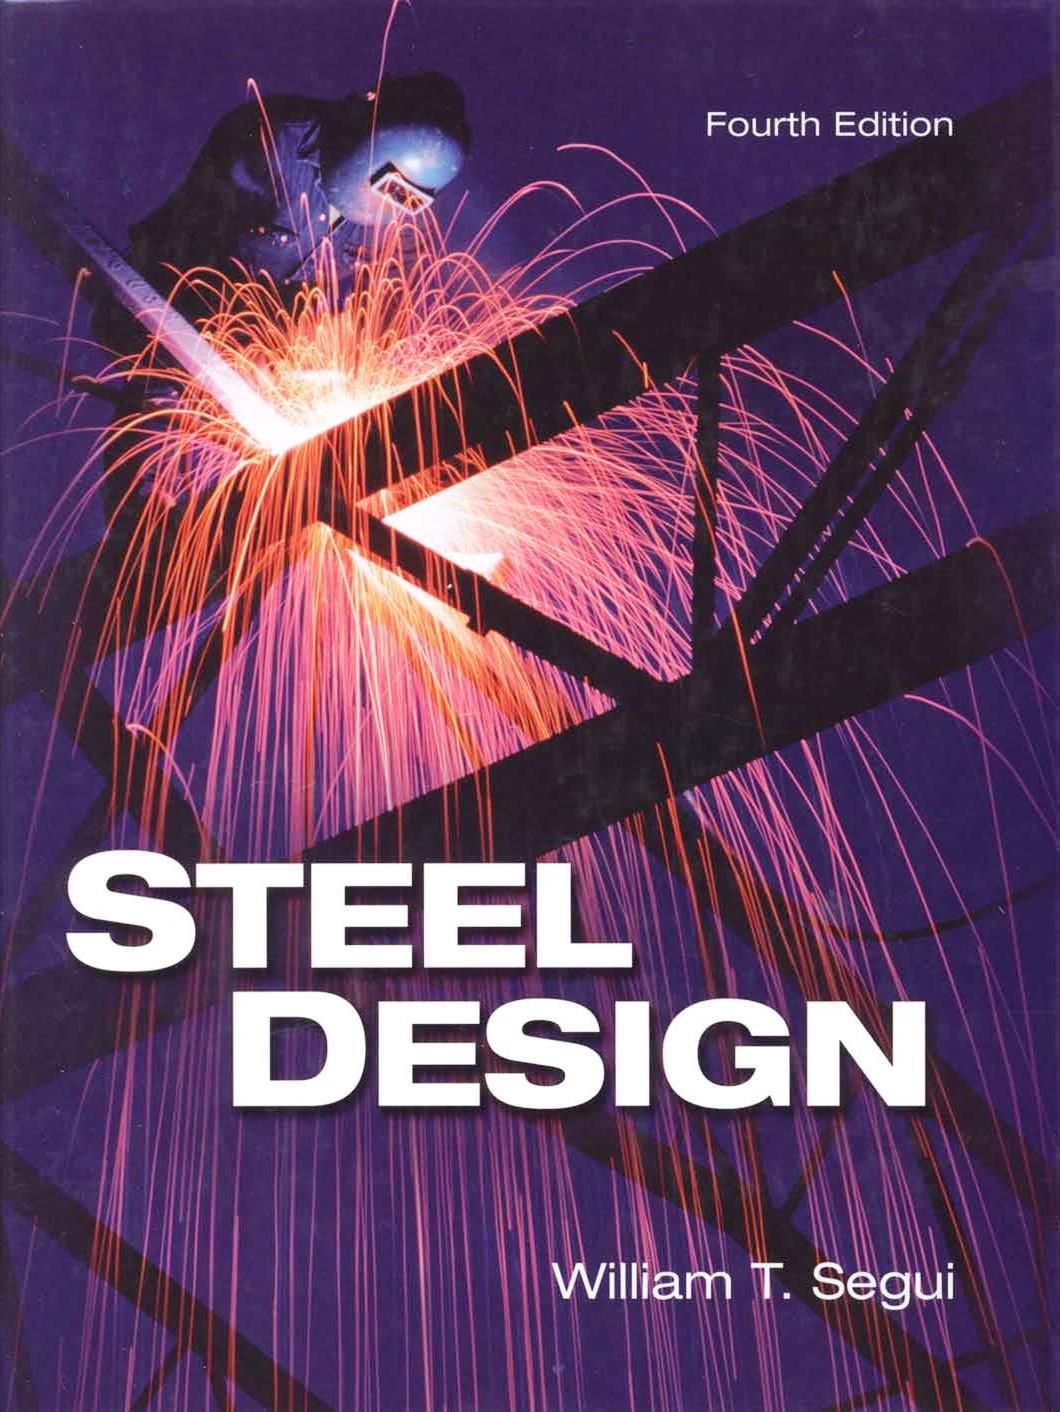 (PDF) Download Steel Design William T. Segui 4th Edition